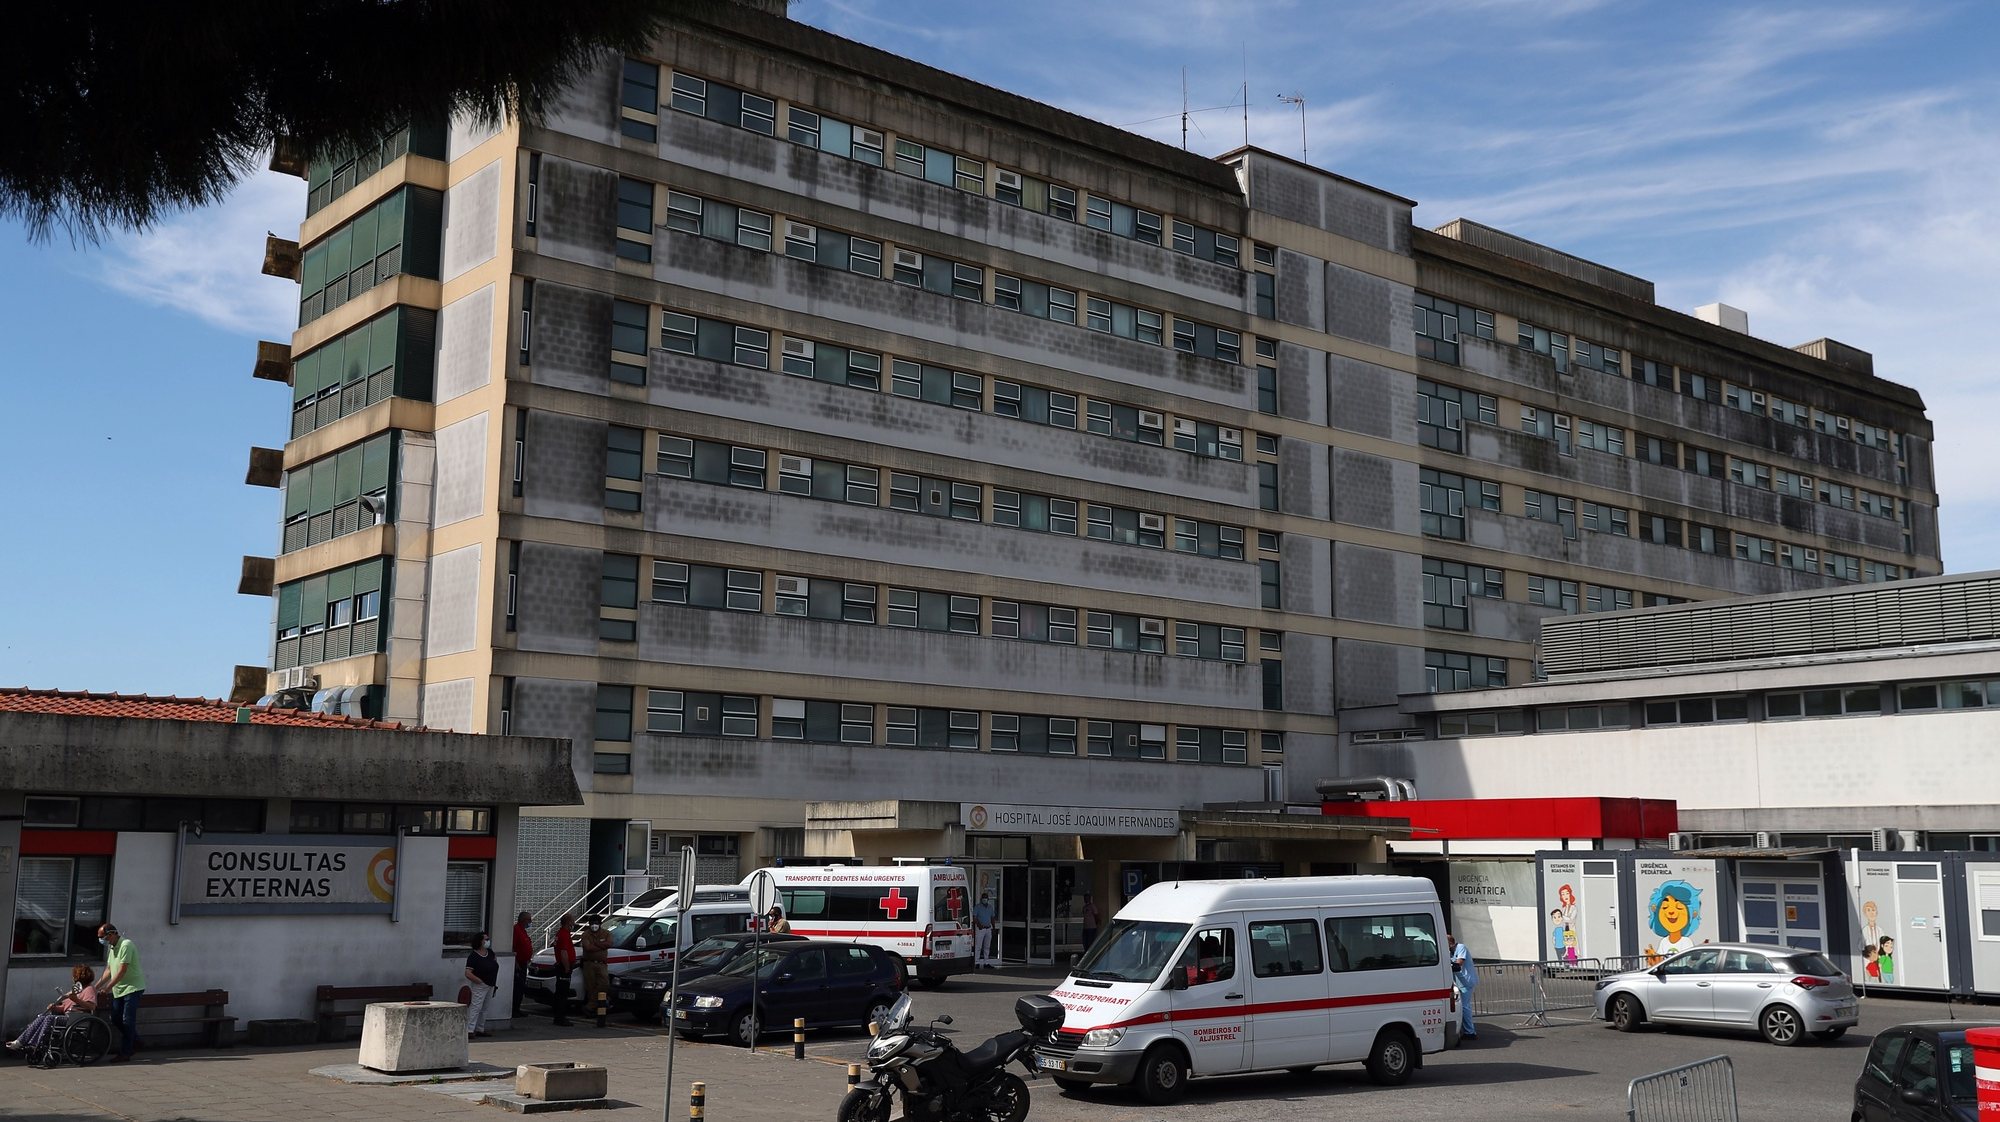 Fachada do edifício principal do hospital José Joaquim Fernandes, em Beja, 18 de maio de 2022. NUNO VEIGA/LUSA